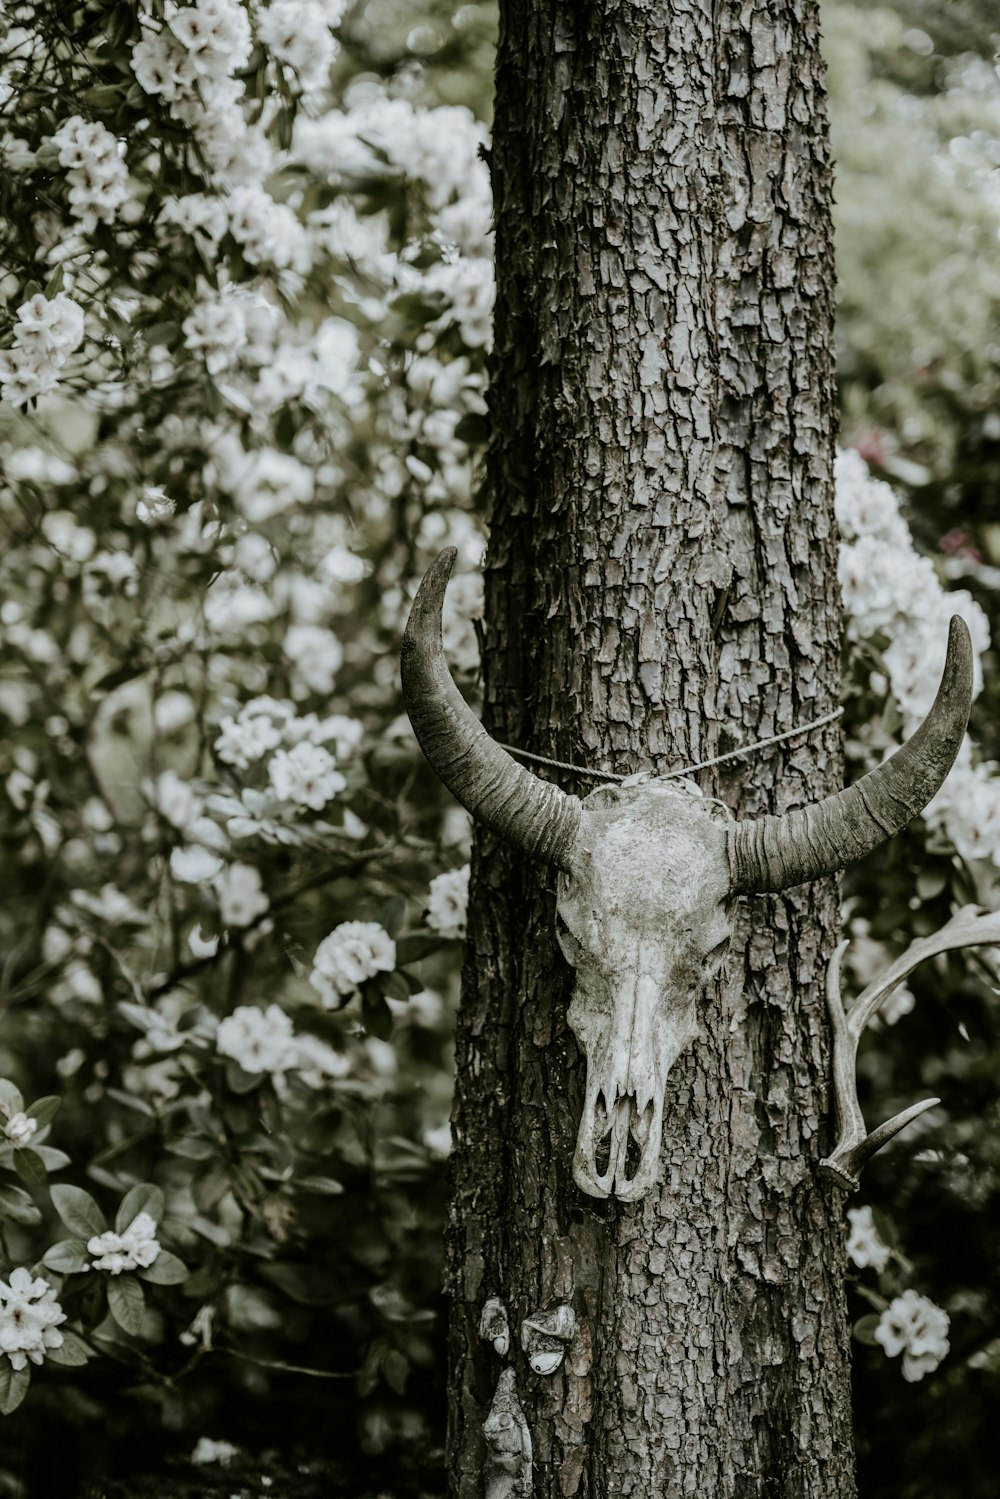 bull skull hanged on tree